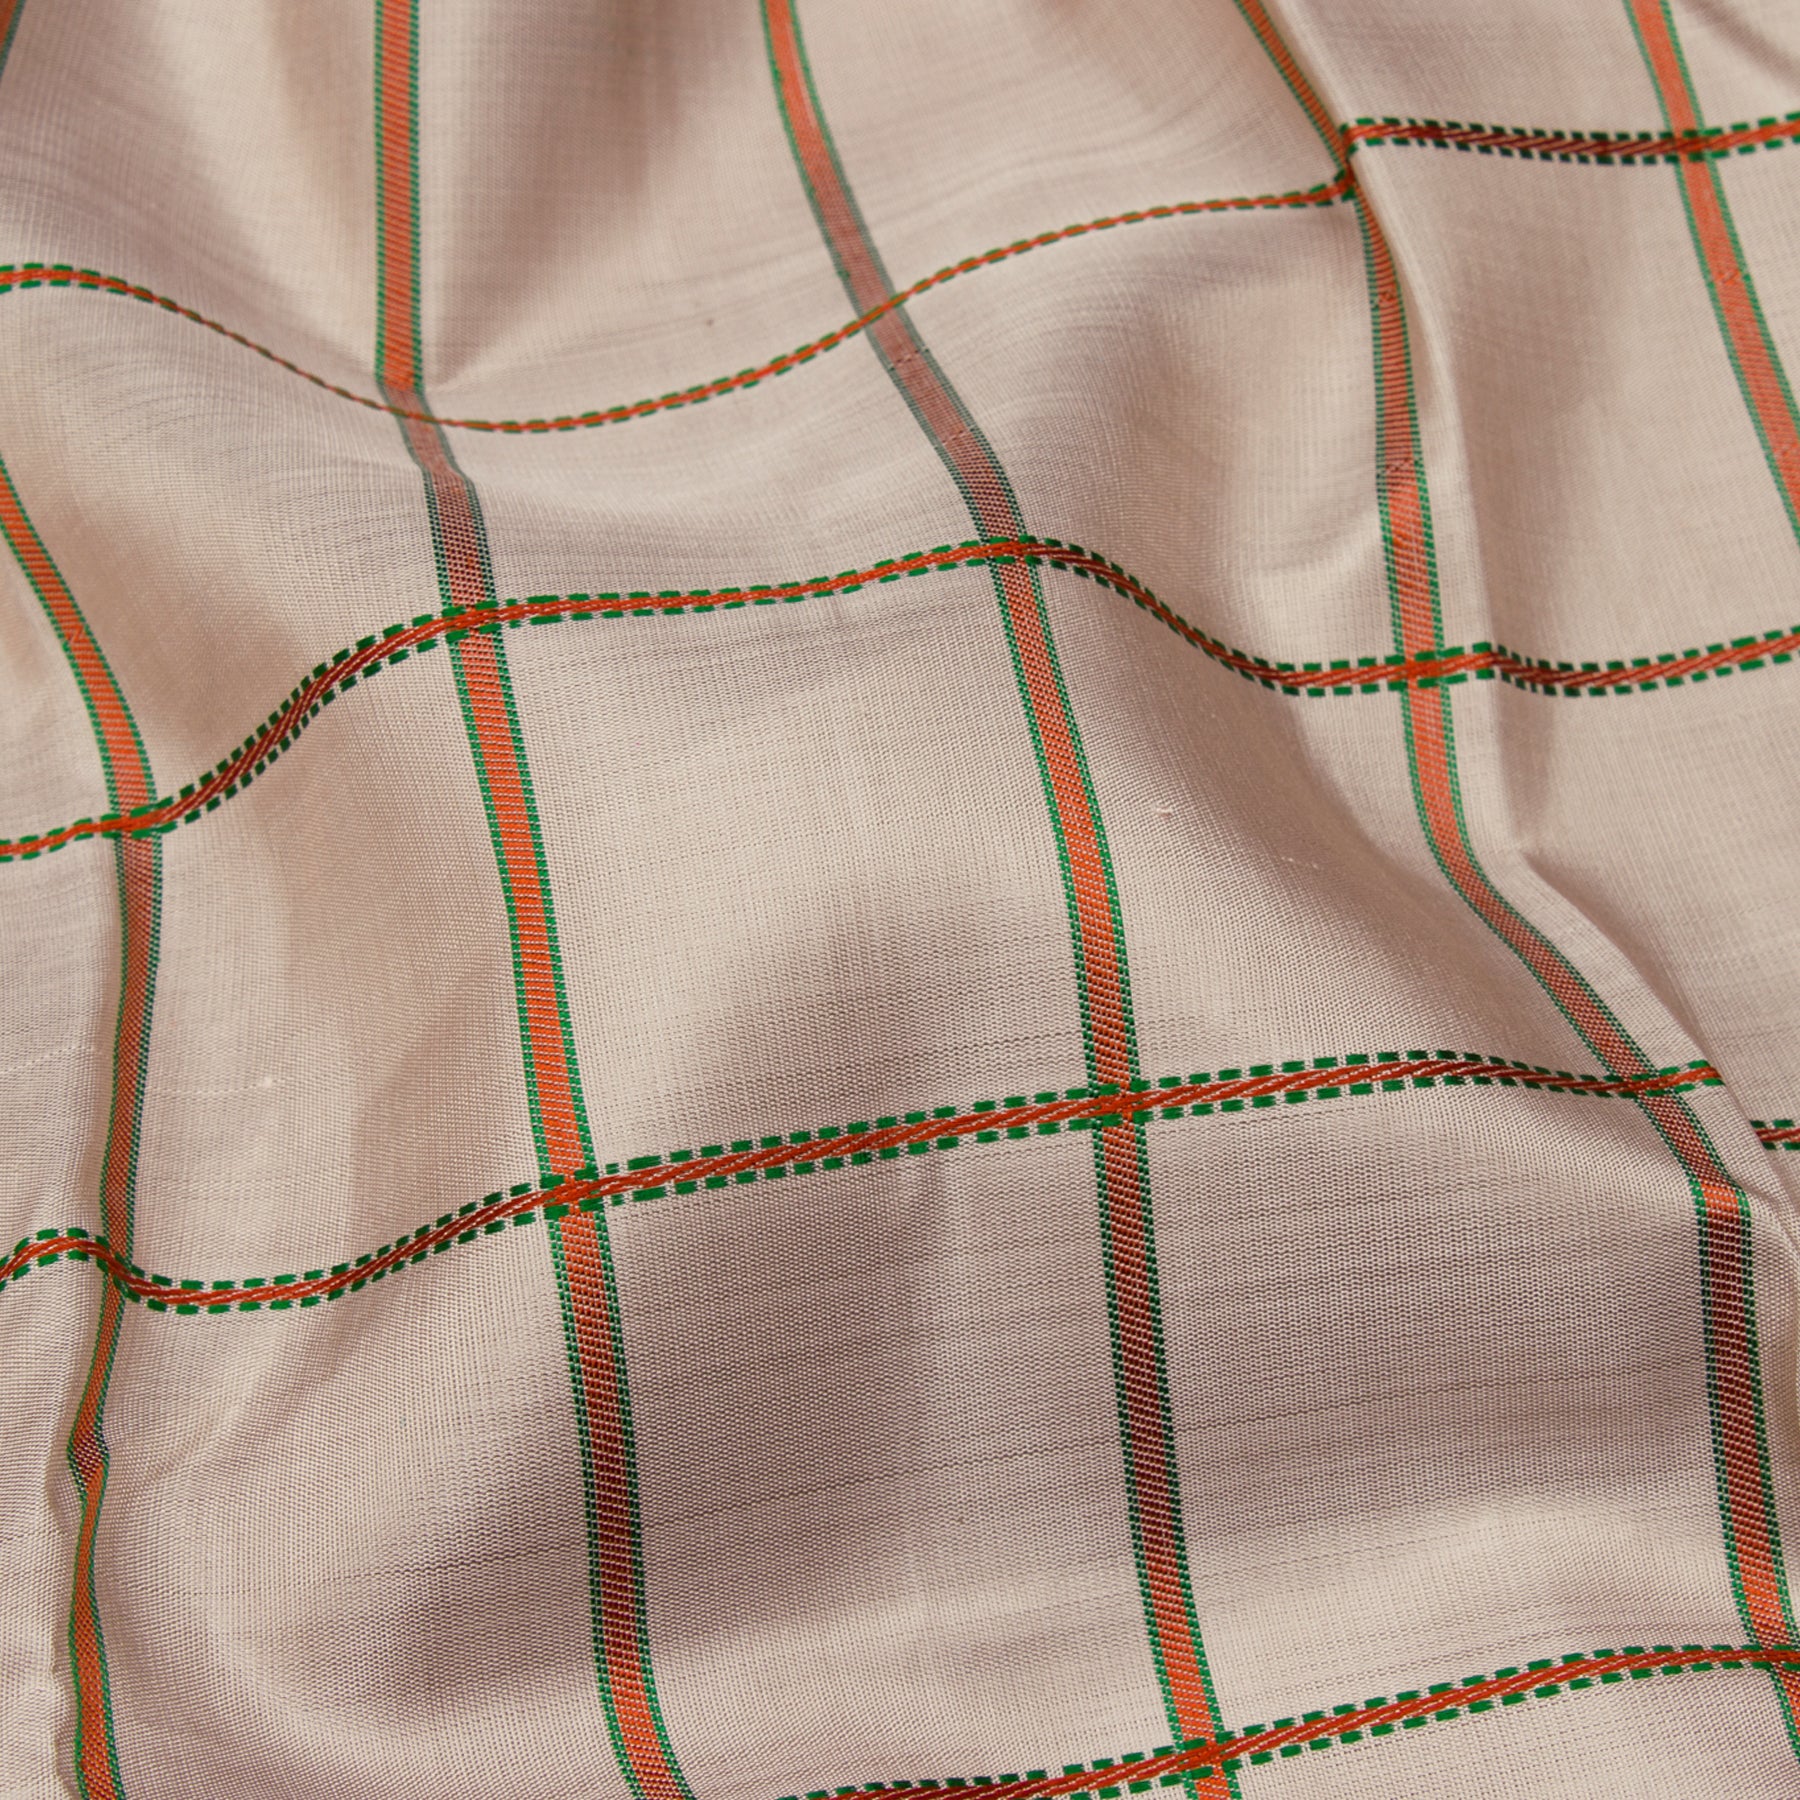 Kanakavalli Kanjivaram Silk Sari 23-040-HS001-10330 - Fabric View